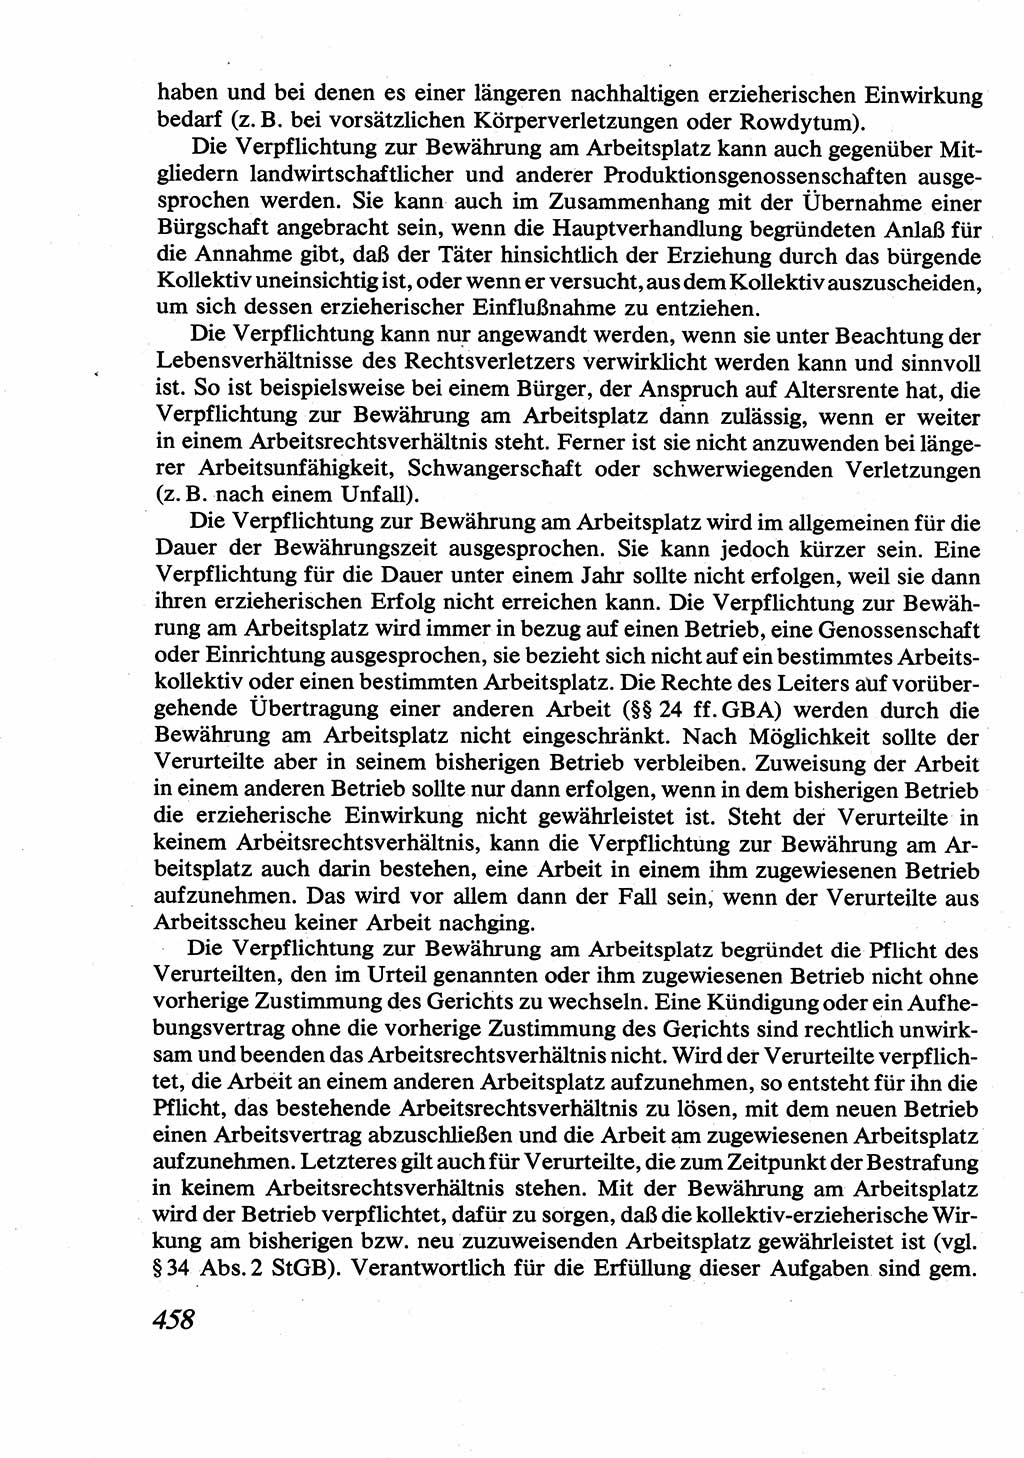 Strafrecht [Deutsche Demokratische Republik (DDR)], Allgemeiner Teil, Lehrbuch 1976, Seite 458 (Strafr. DDR AT Lb. 1976, S. 458)